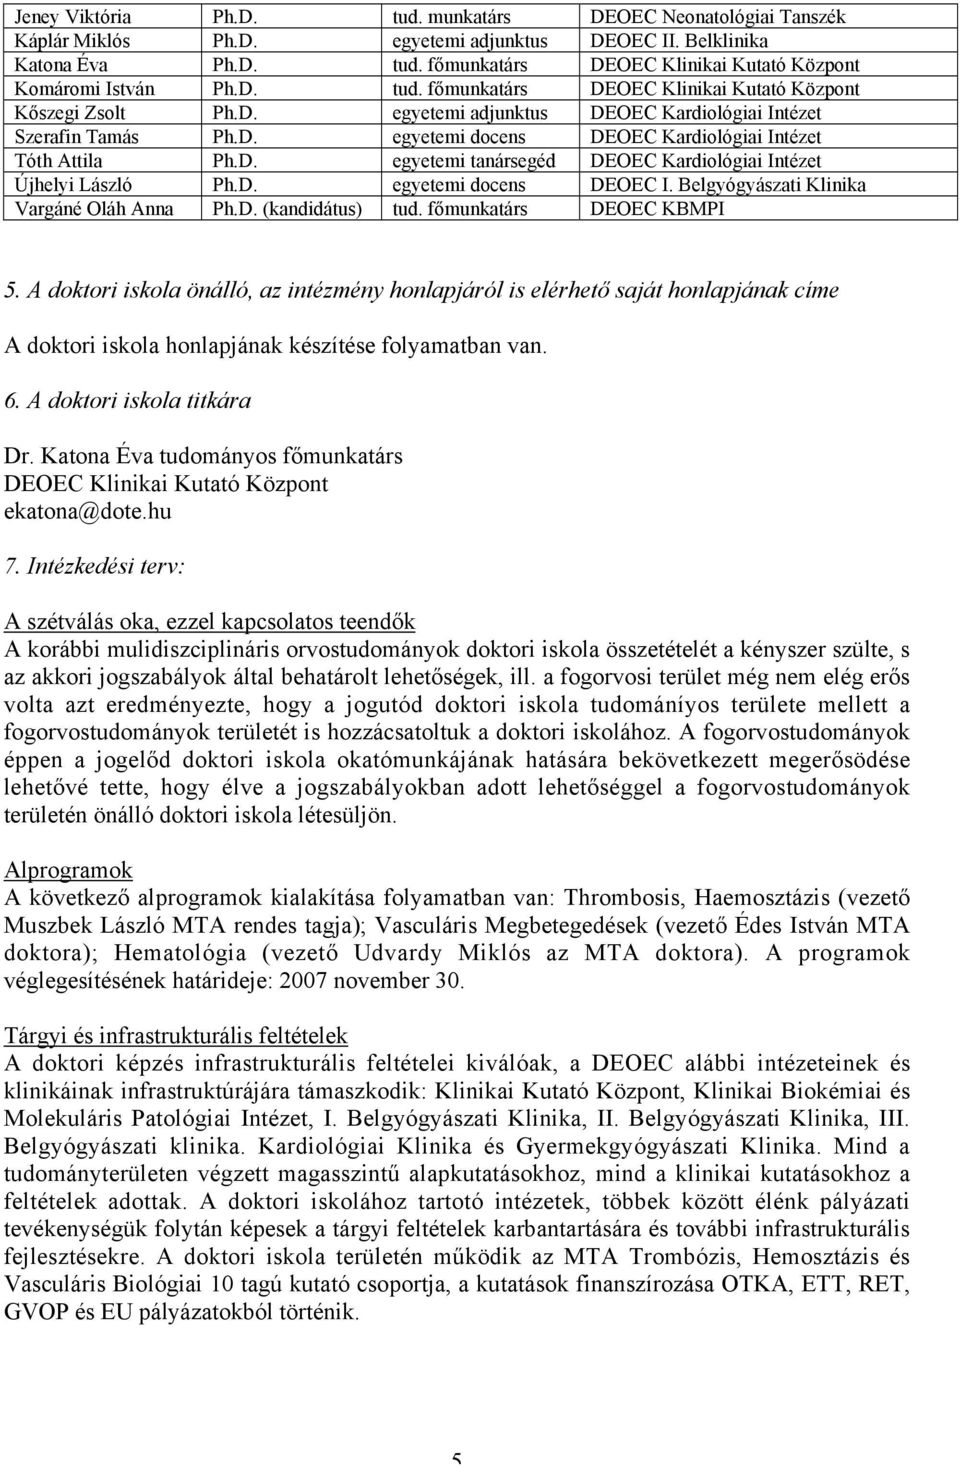 A Debreceni Egyetem doktori iskoláinak - PDF Free Download